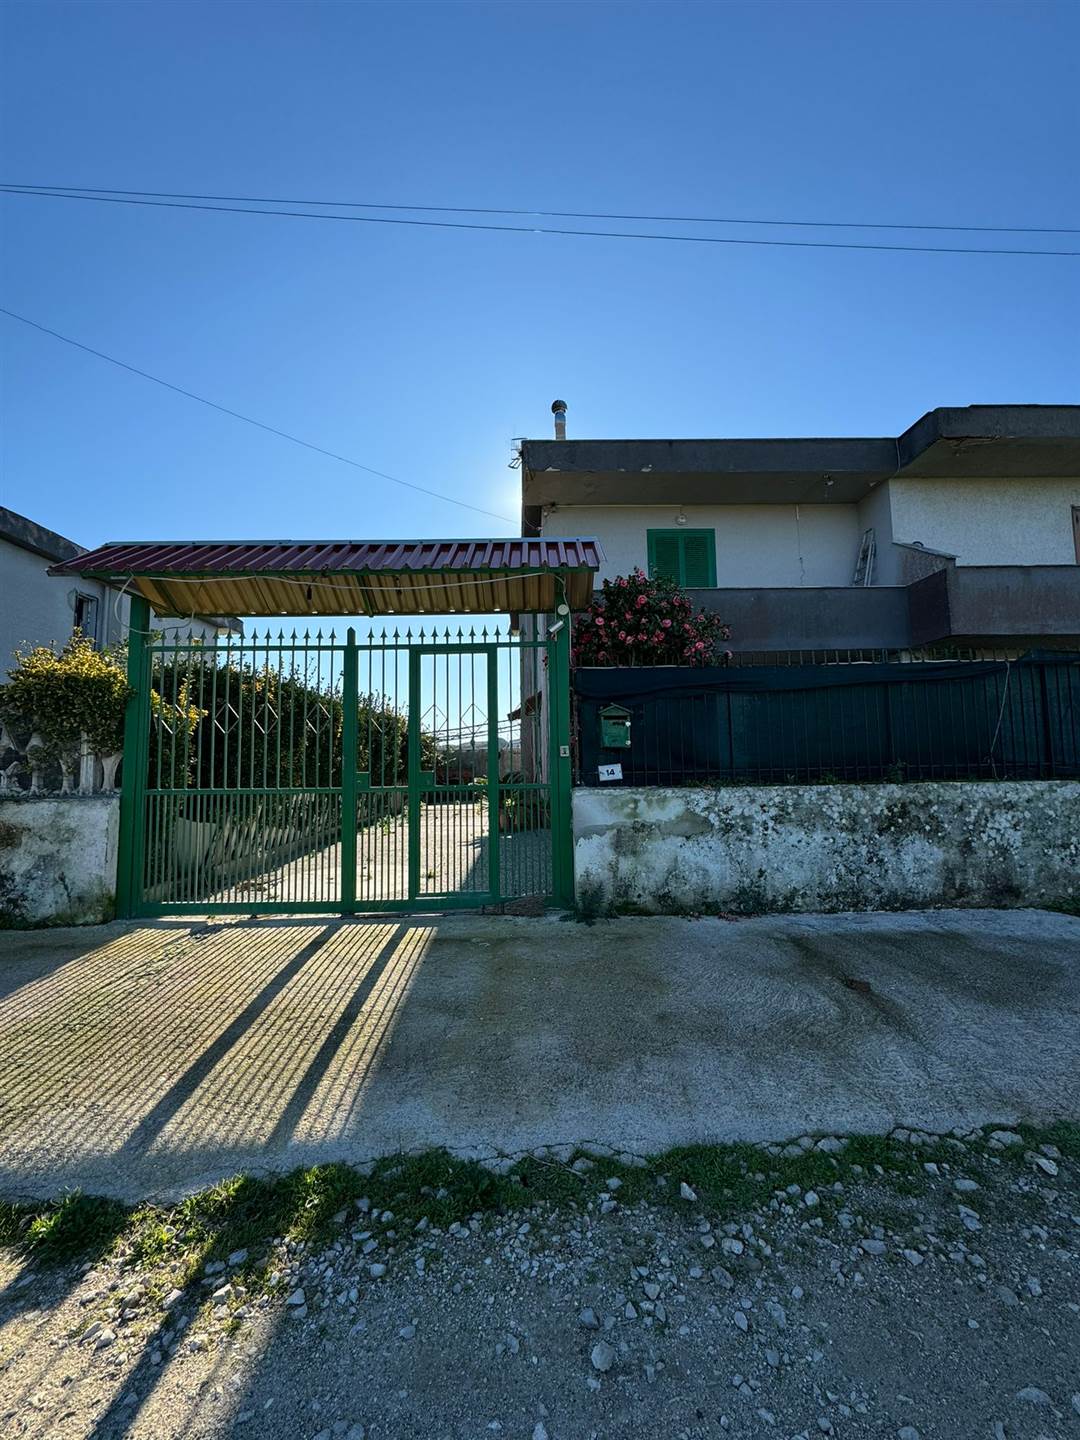 Villa in vendita a Castel Volturno, 4 locali, zona Località: DOMIZIANA DA SCATOZZA A PINETAMARE, prezzo € 65.000 | PortaleAgenzieImmobiliari.it